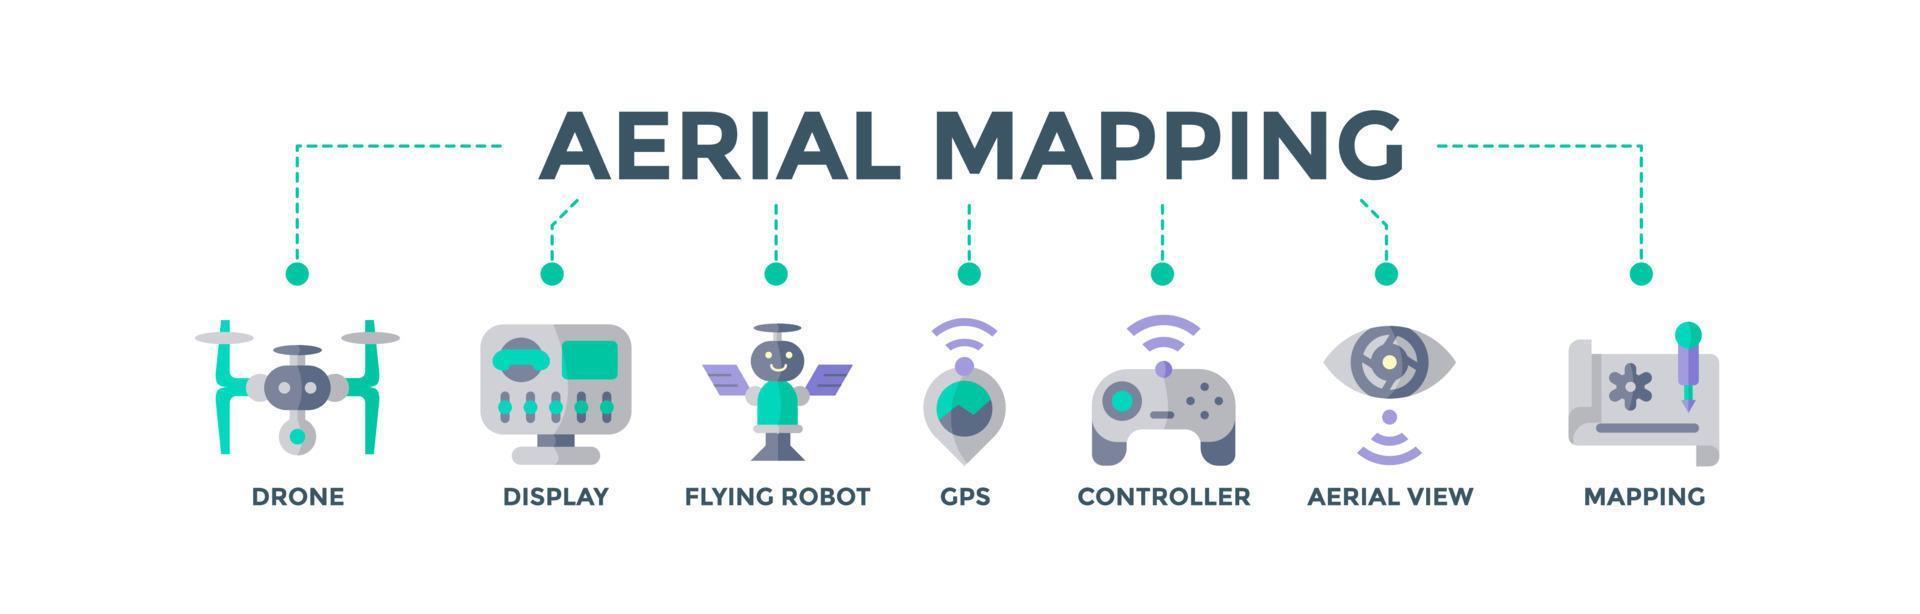 conceito de ilustração vetorial de ícone da web de banner de mapeamento aéreo para consulta de tecnologia com ícones de drone, display, robô voador, gps, controlador, visualização inteligente e mapeamento vetor